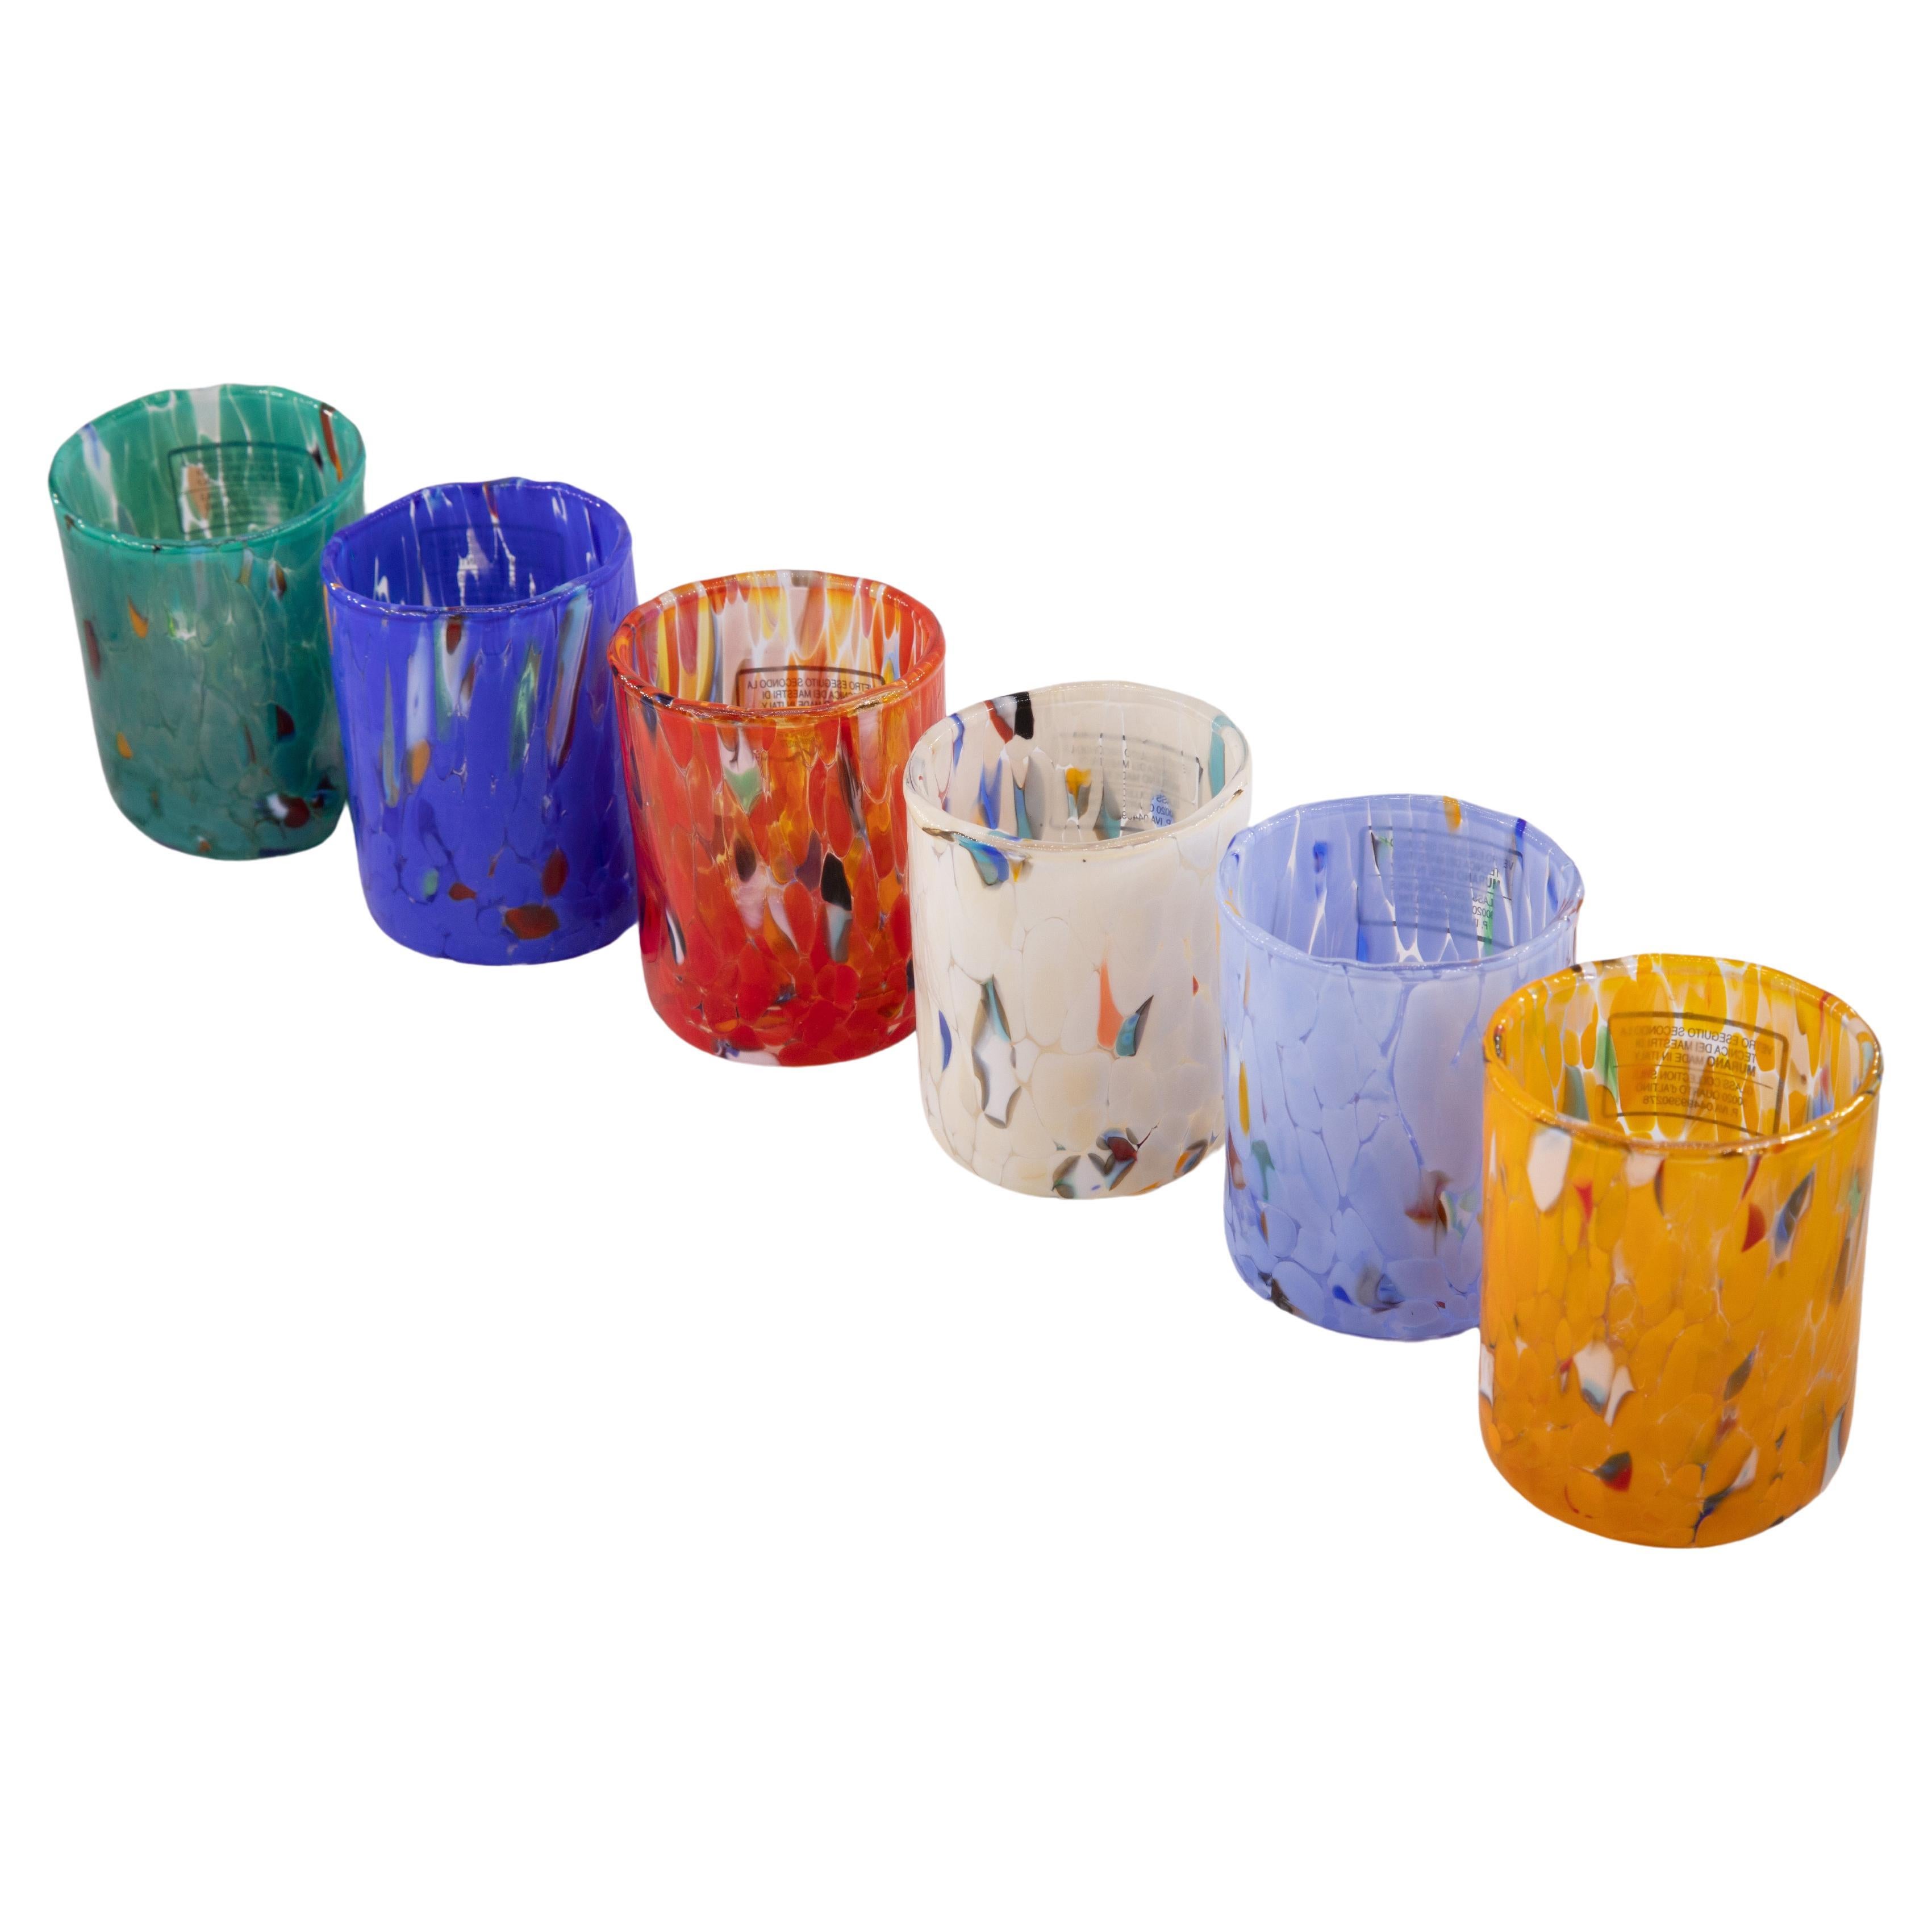 Ensemble de 6 verres de Murano couleur « Multicolor » fabriqués à la main, fabriqués en Italie